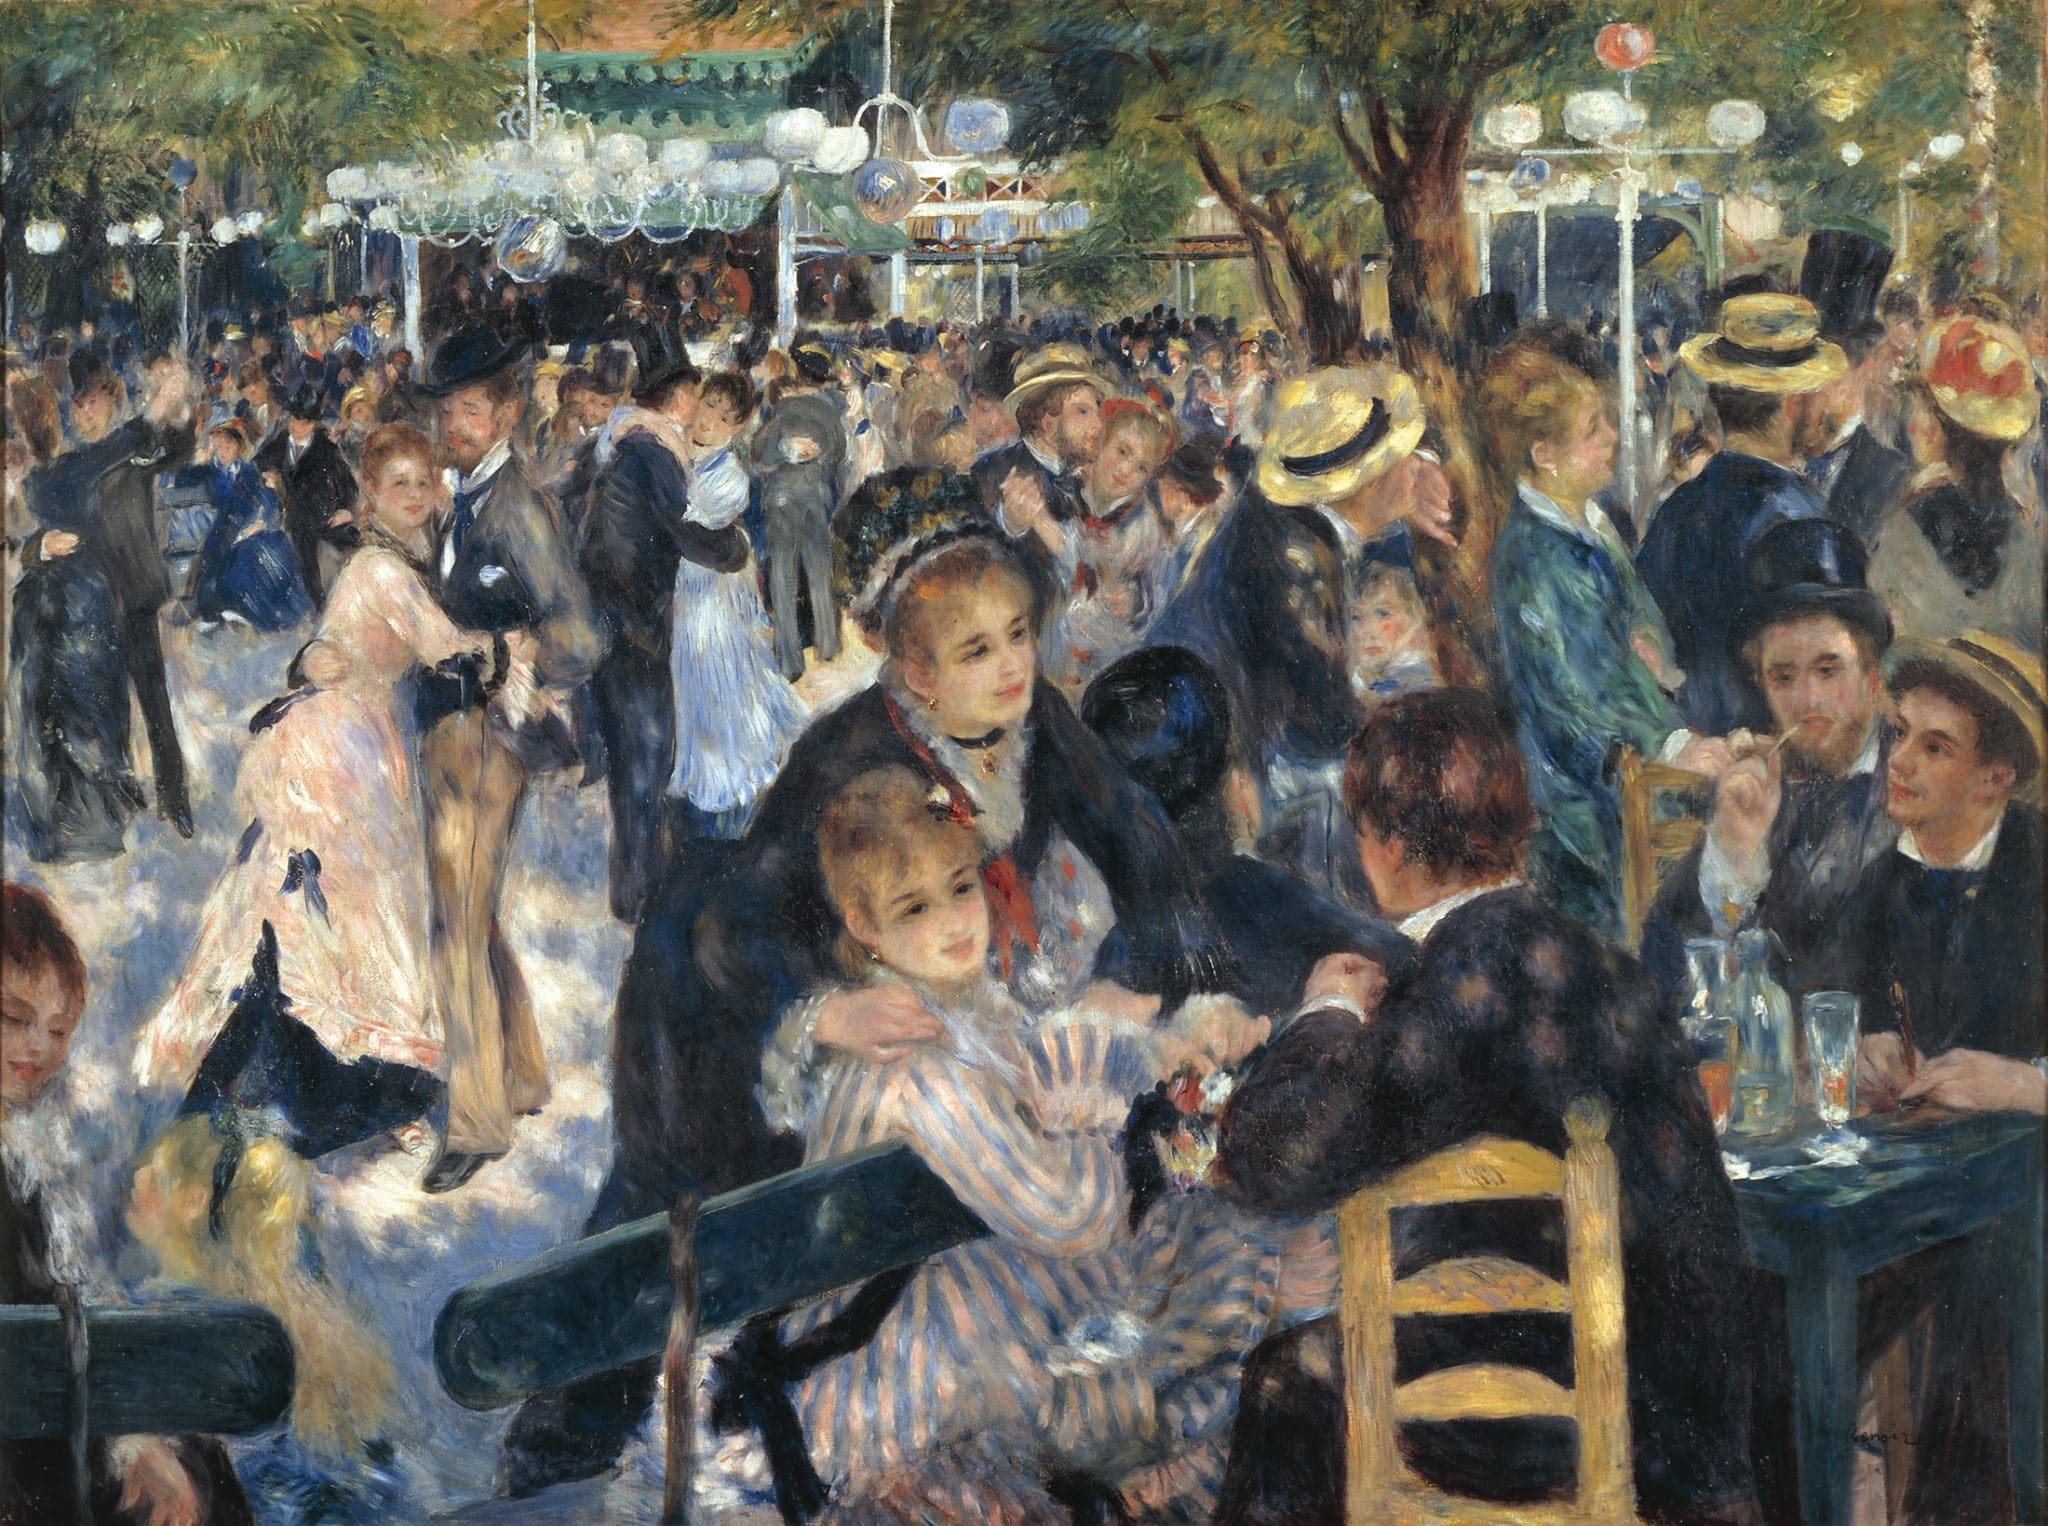 Le Moulin de la Galette, Pierre-Auguste Renoir, Park West Gallery